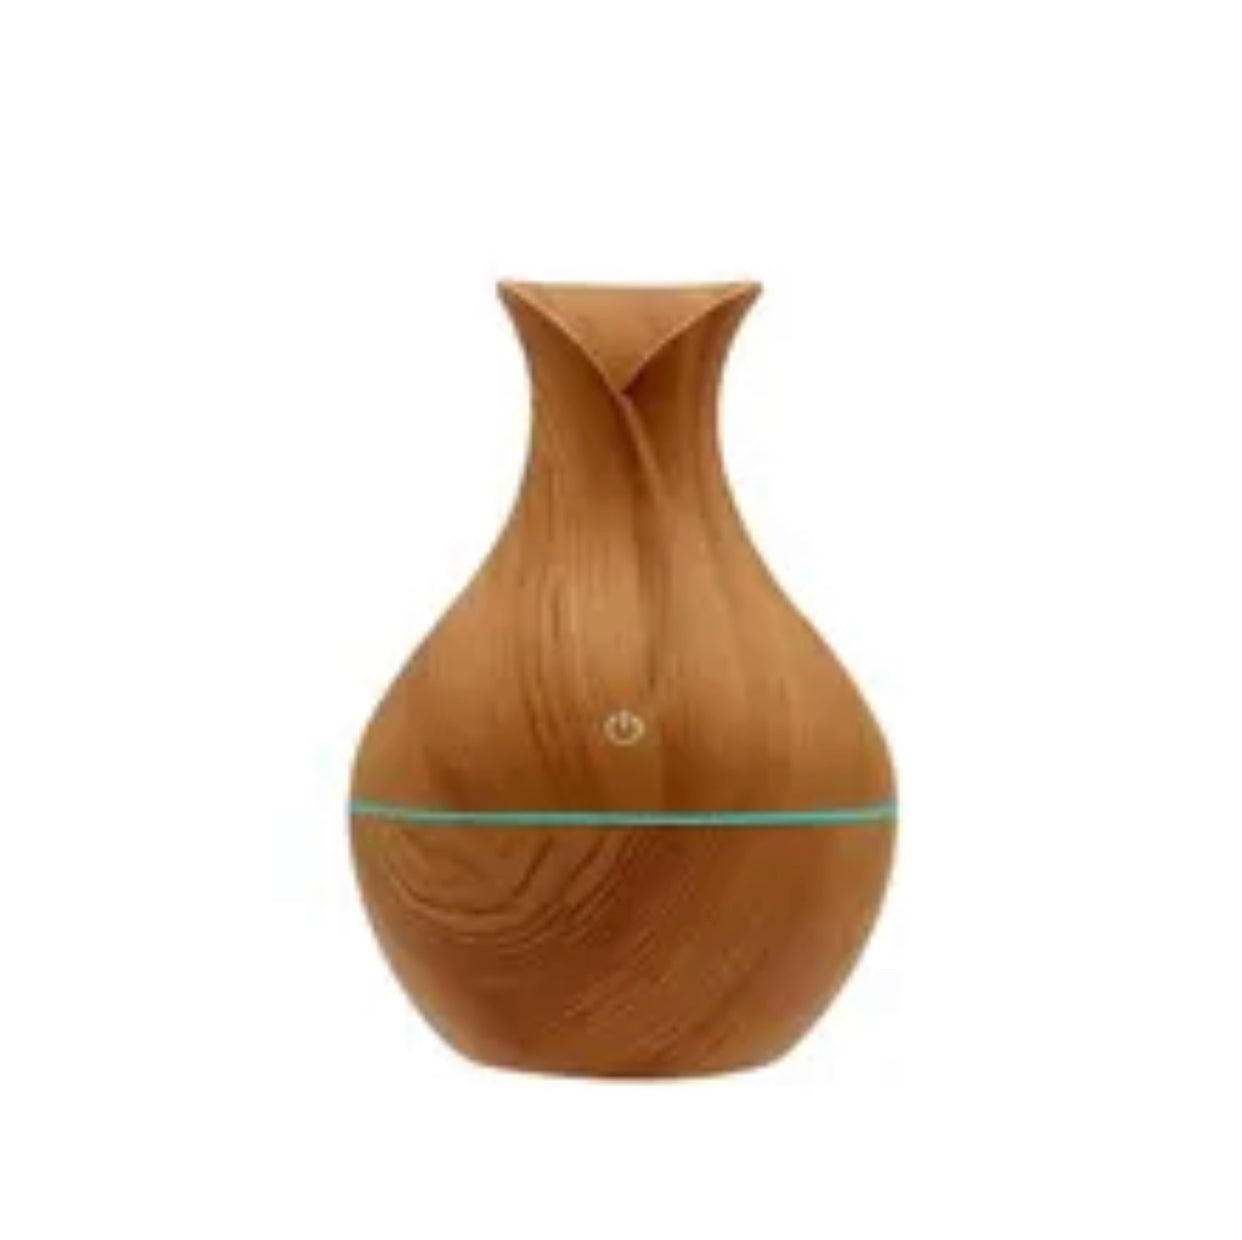 Vase in Holzmaserung - Diffuser - Luftbefeuchter: Natürlichkeit trifft auf moderne Technik